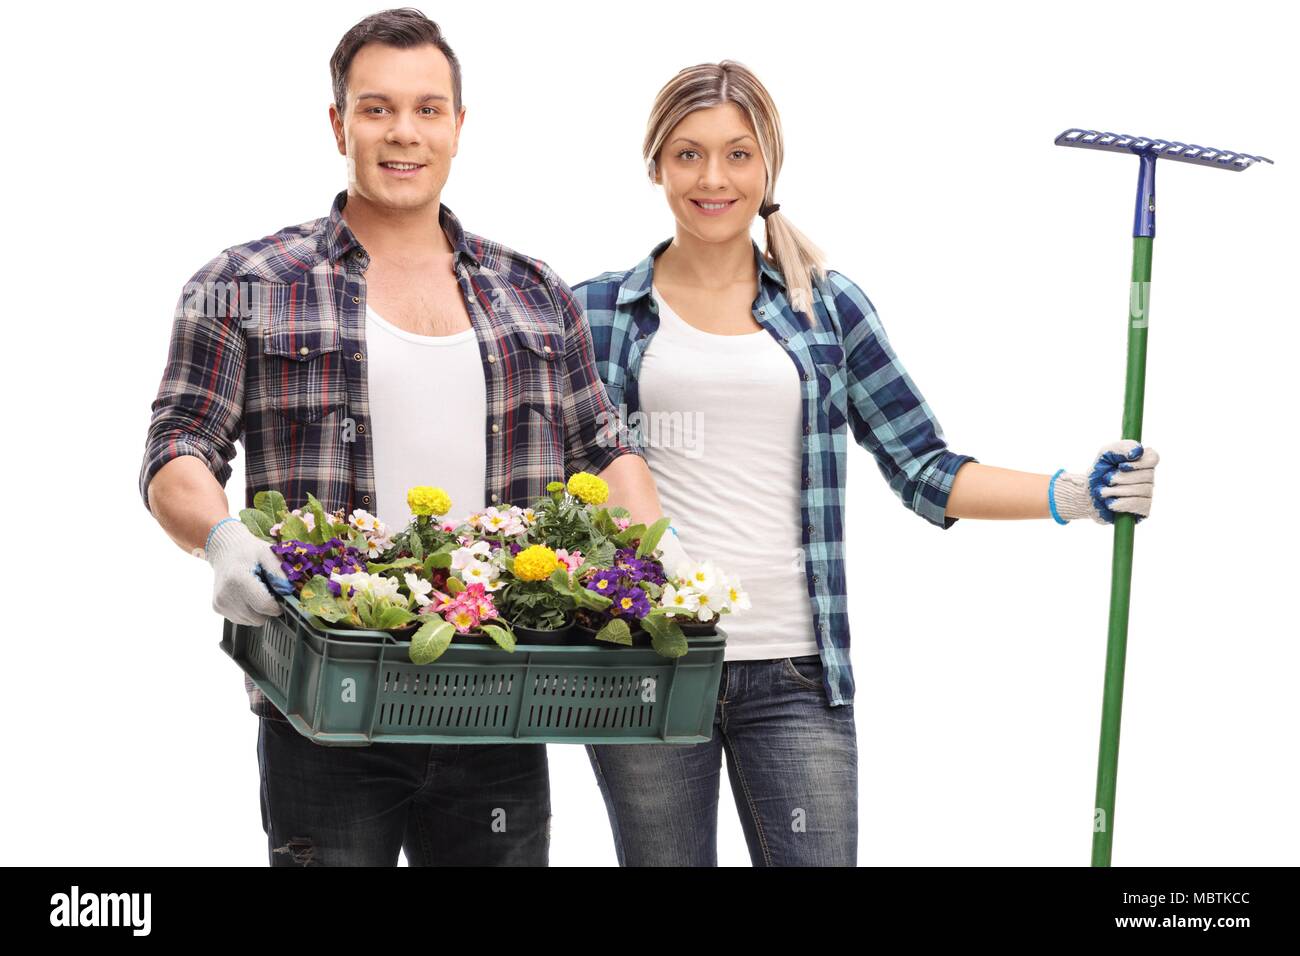 Männliche Gärtner mit einem Rack von Blumen und eine weibliche Gärtner mit einem Rechen auf weißem Hintergrund Stockfoto